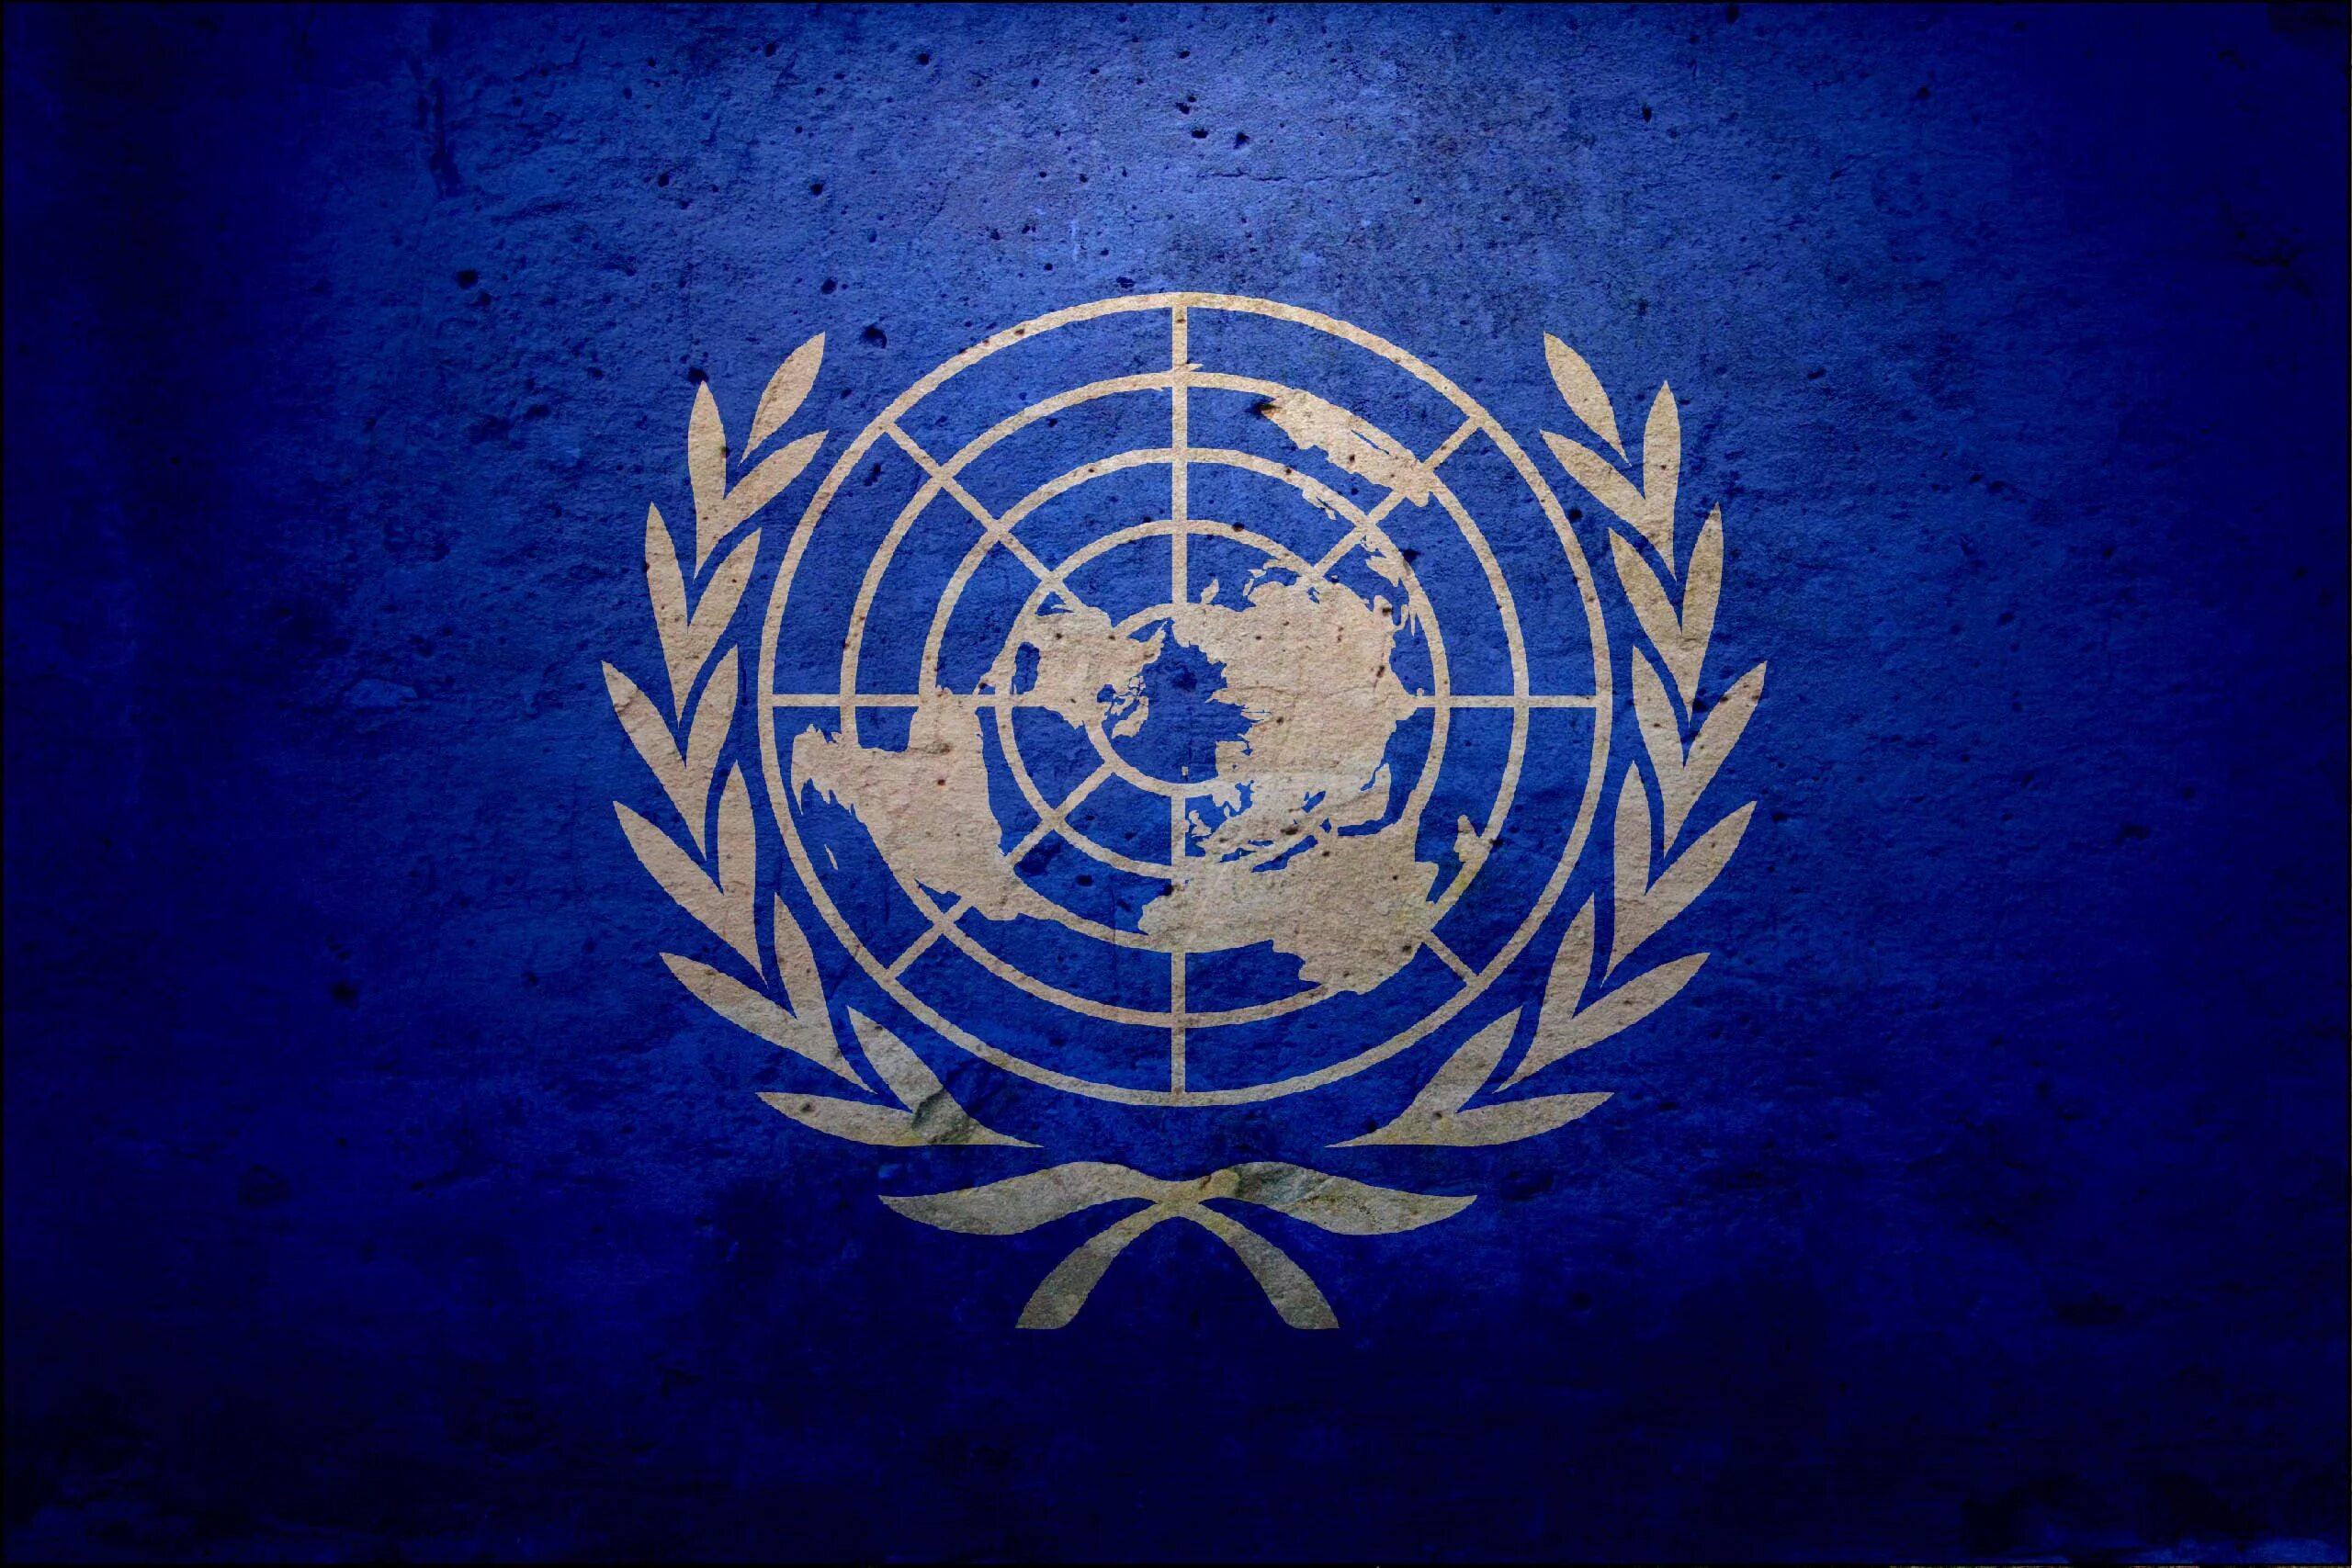 Кодекс оон. Флаг ООН. Флаг организации Объединенных наций. Флаг ООН флаг ООН. Флаг ООН плоская земля.